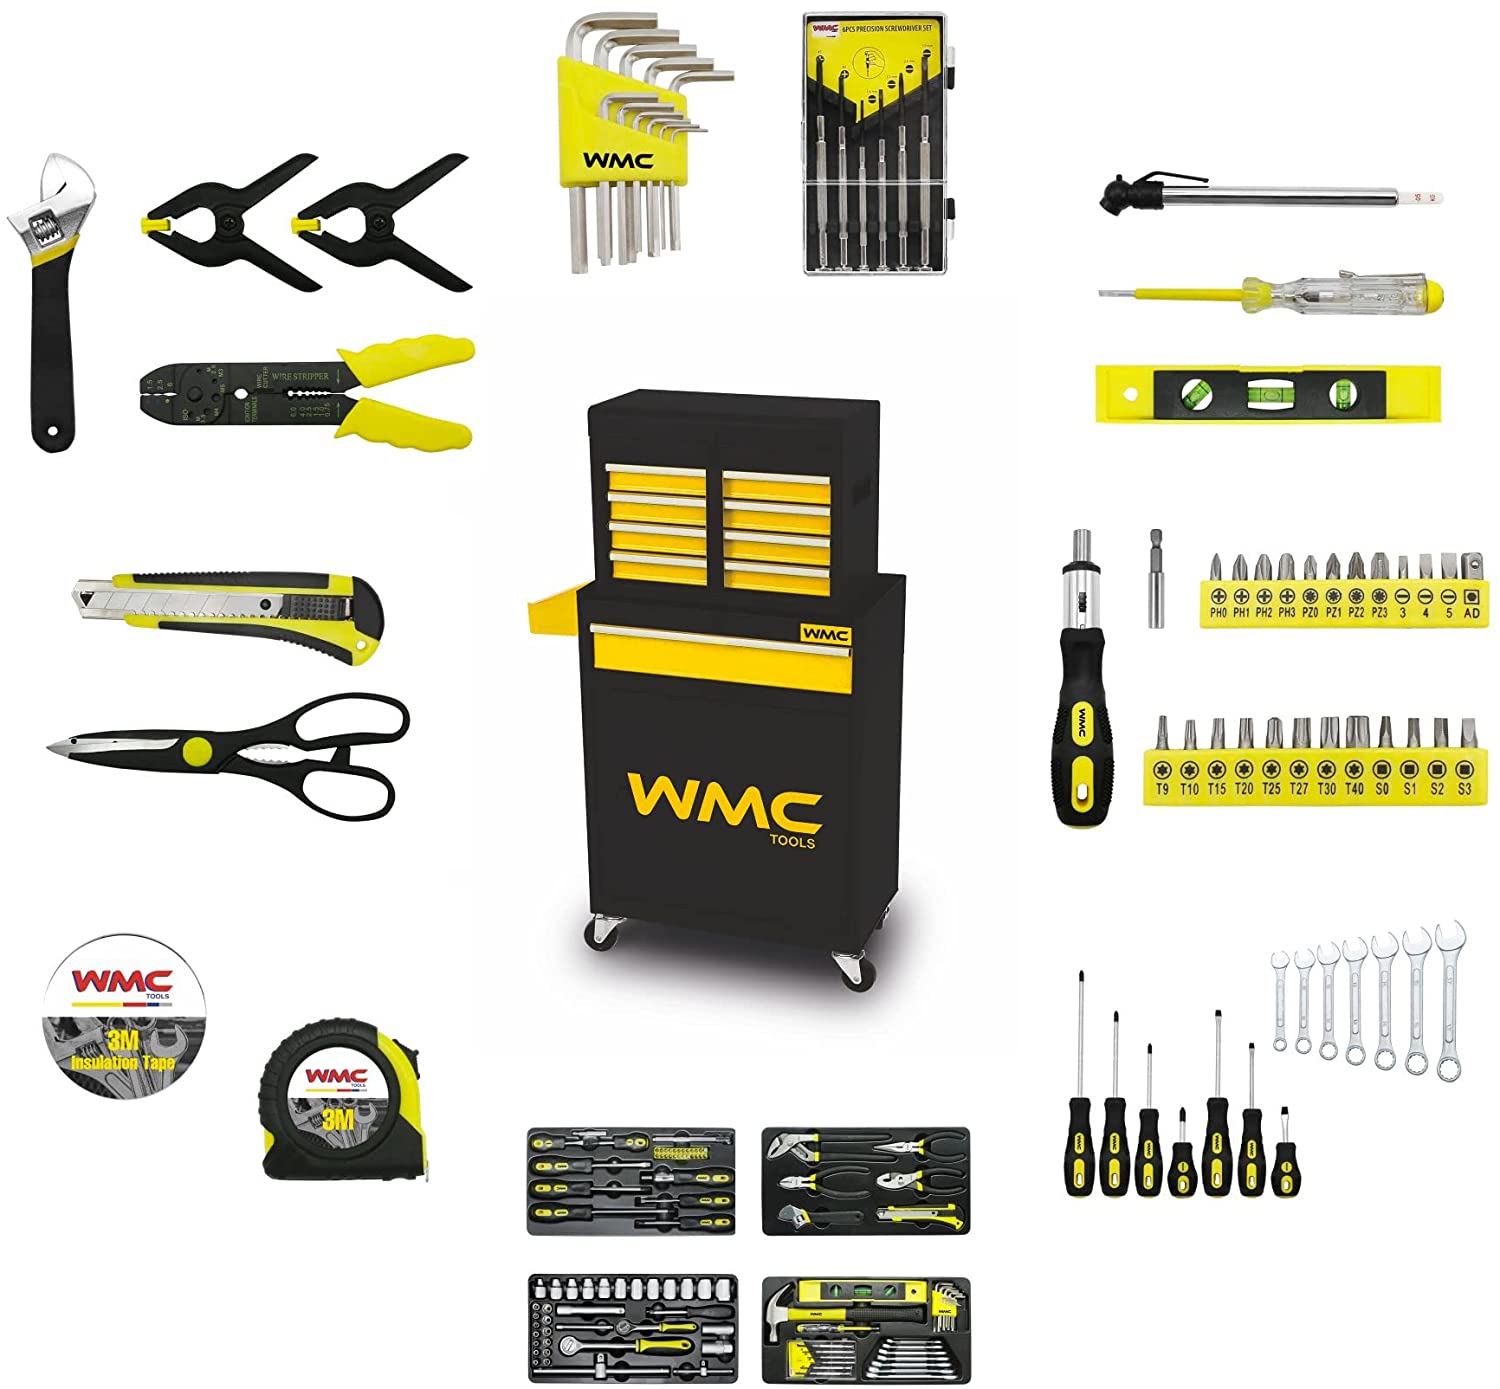 Wmc garage drawer roller cabinet مع مجموعة أدوات من 257 أداة ، عربة لتخزين الأدوات اليدوية وتأمينها